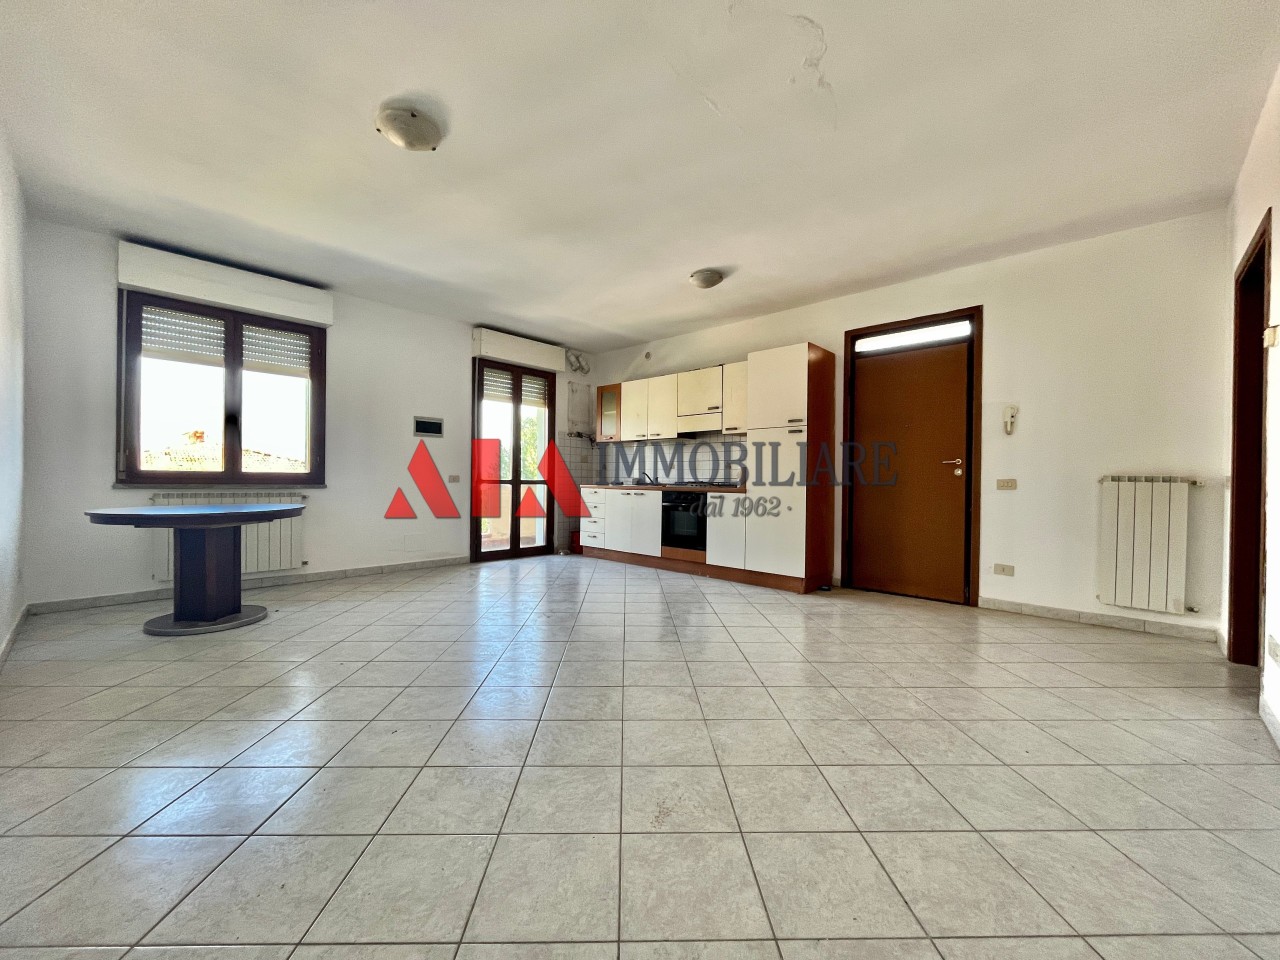 Appartamento in vendita a Bientina, 4 locali, prezzo € 155.000 | PortaleAgenzieImmobiliari.it